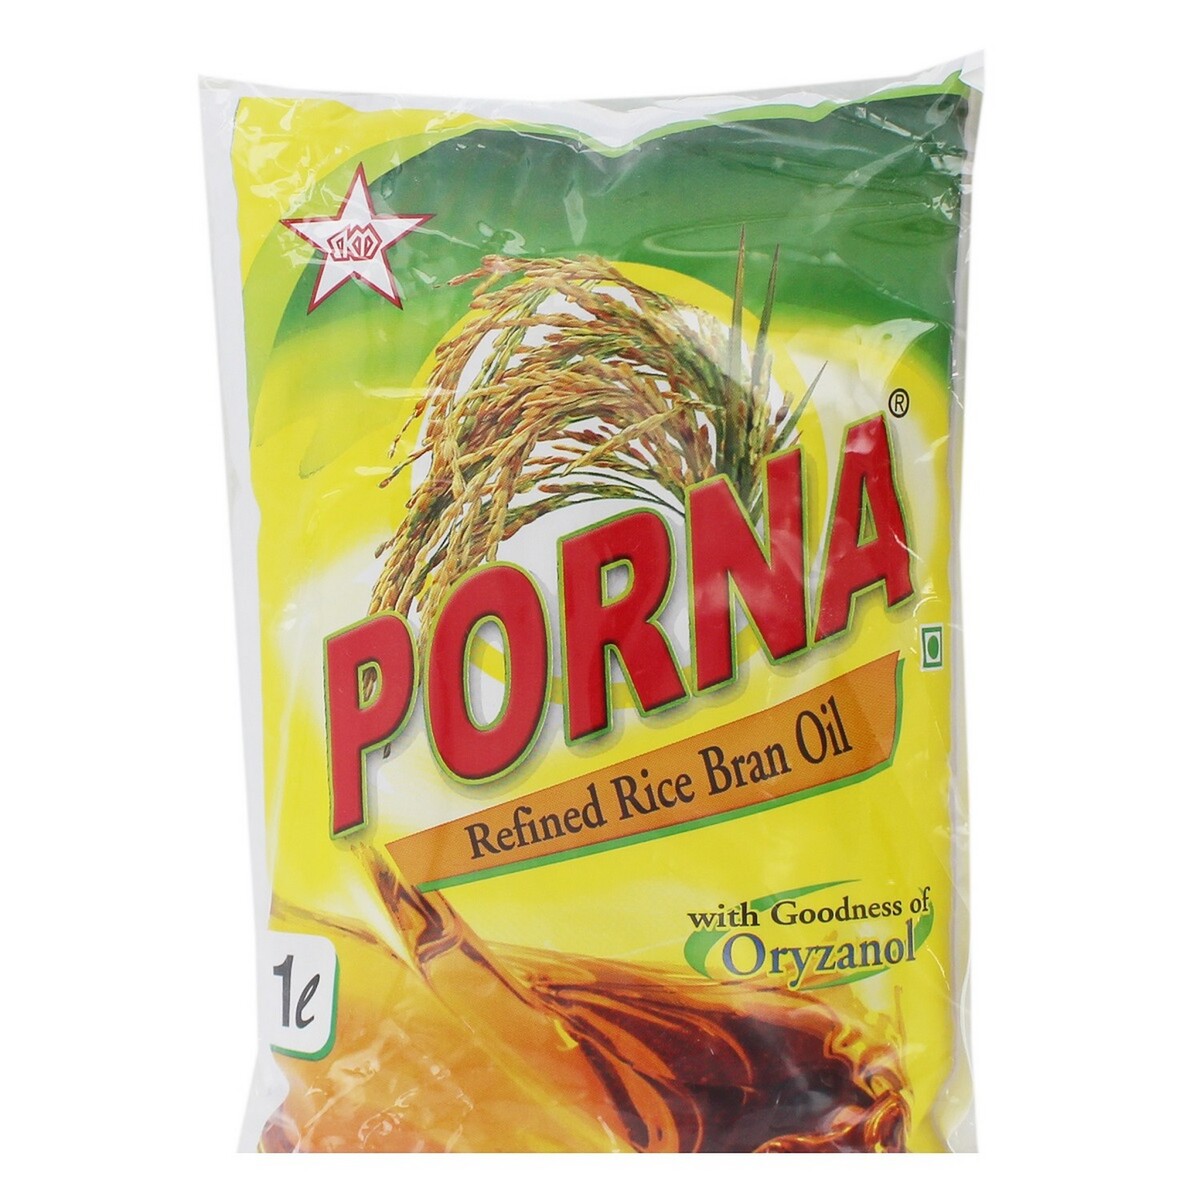 Porna Refined Rice Bran Oil Pouch 1Litre